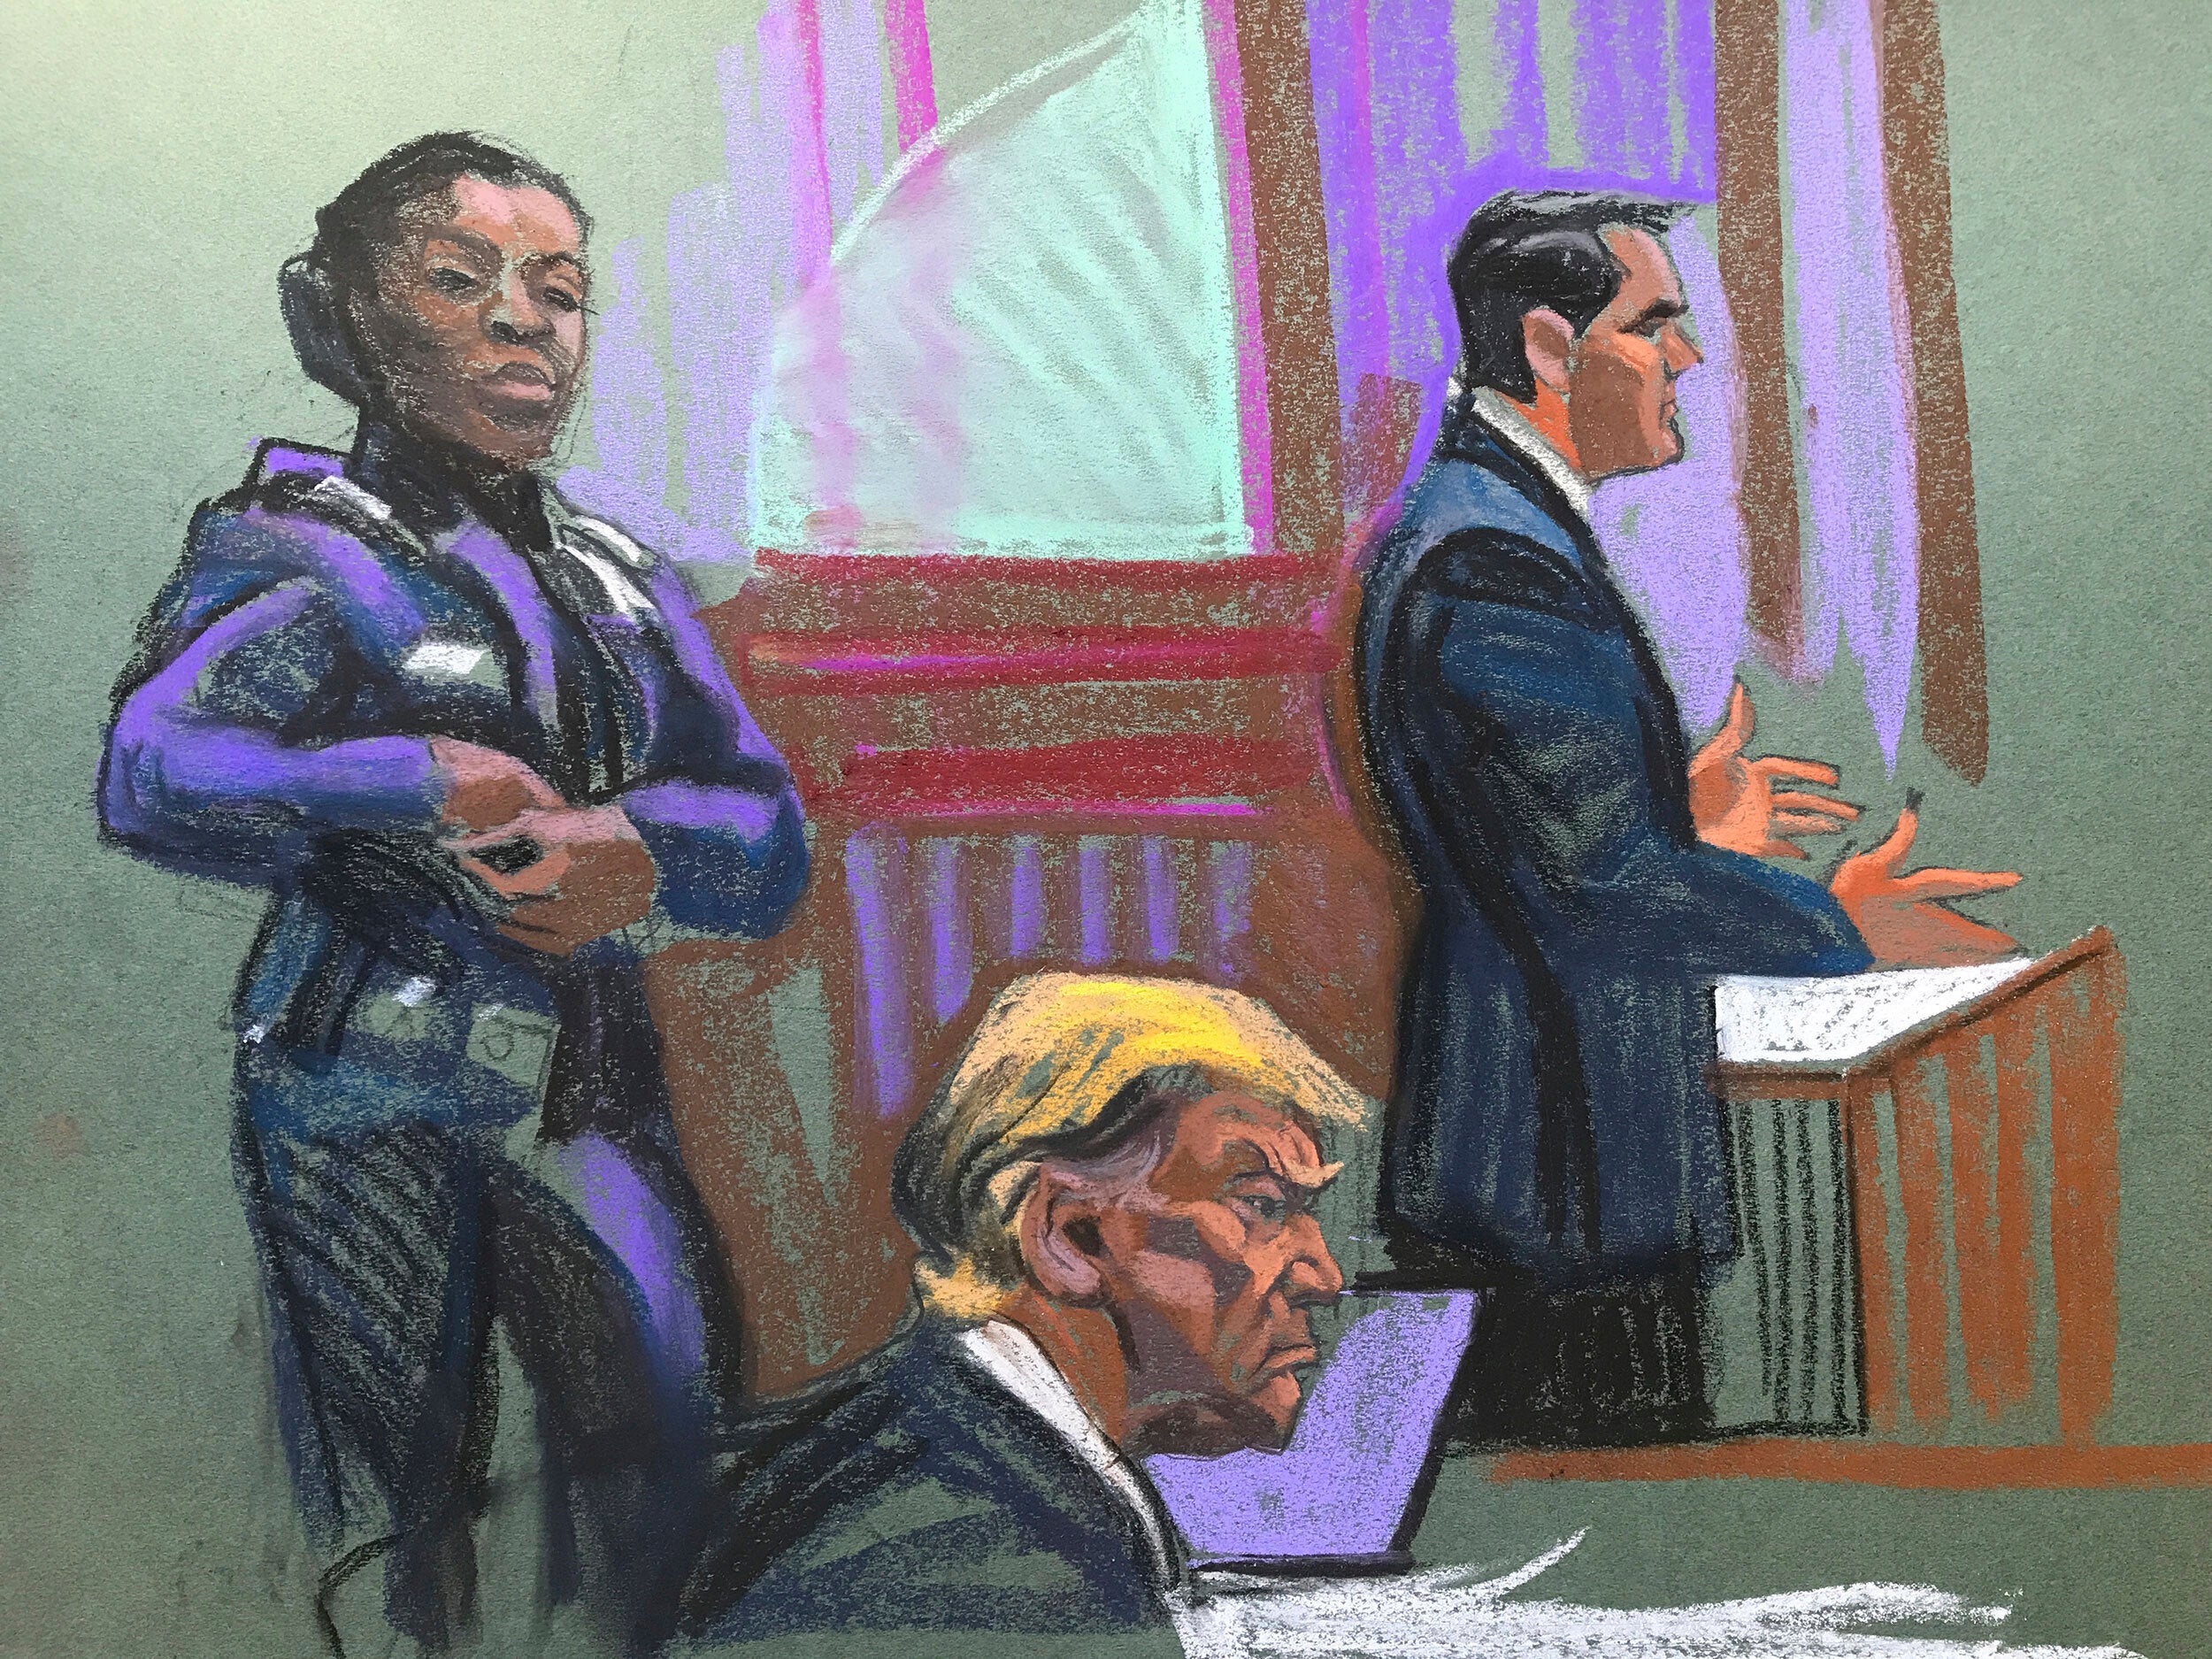 trump recibe una amonestación por “intimidar” a una miembro del jurado en juicio por soborno